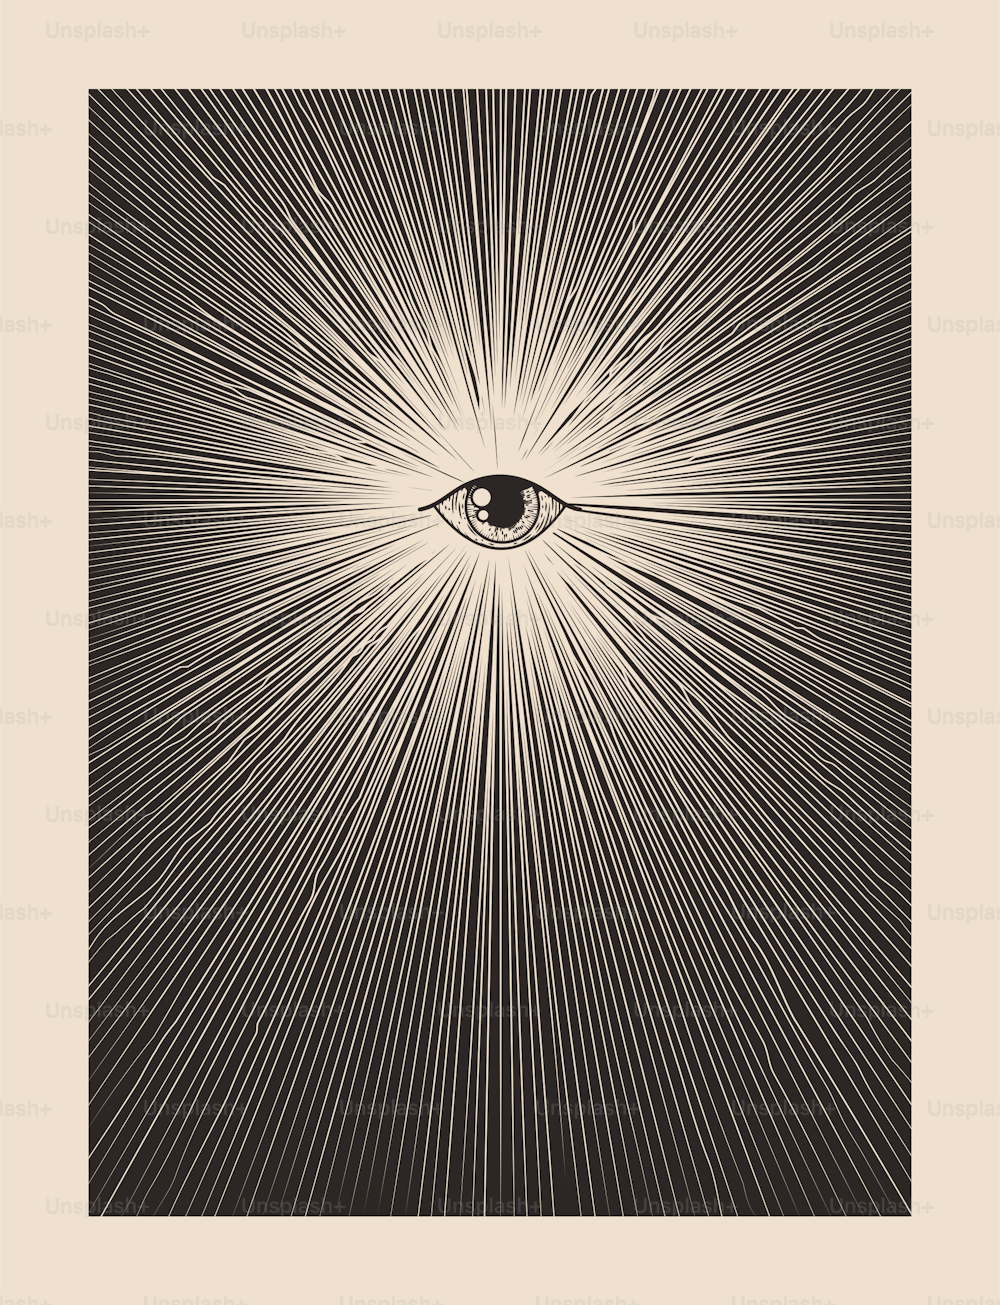 Alle sehen Gottauge Vintage mystische Mason Druck Poster Design-Design-Vorlage mit Auge umgeben Sunburst. Vektor eps 10 Illustration